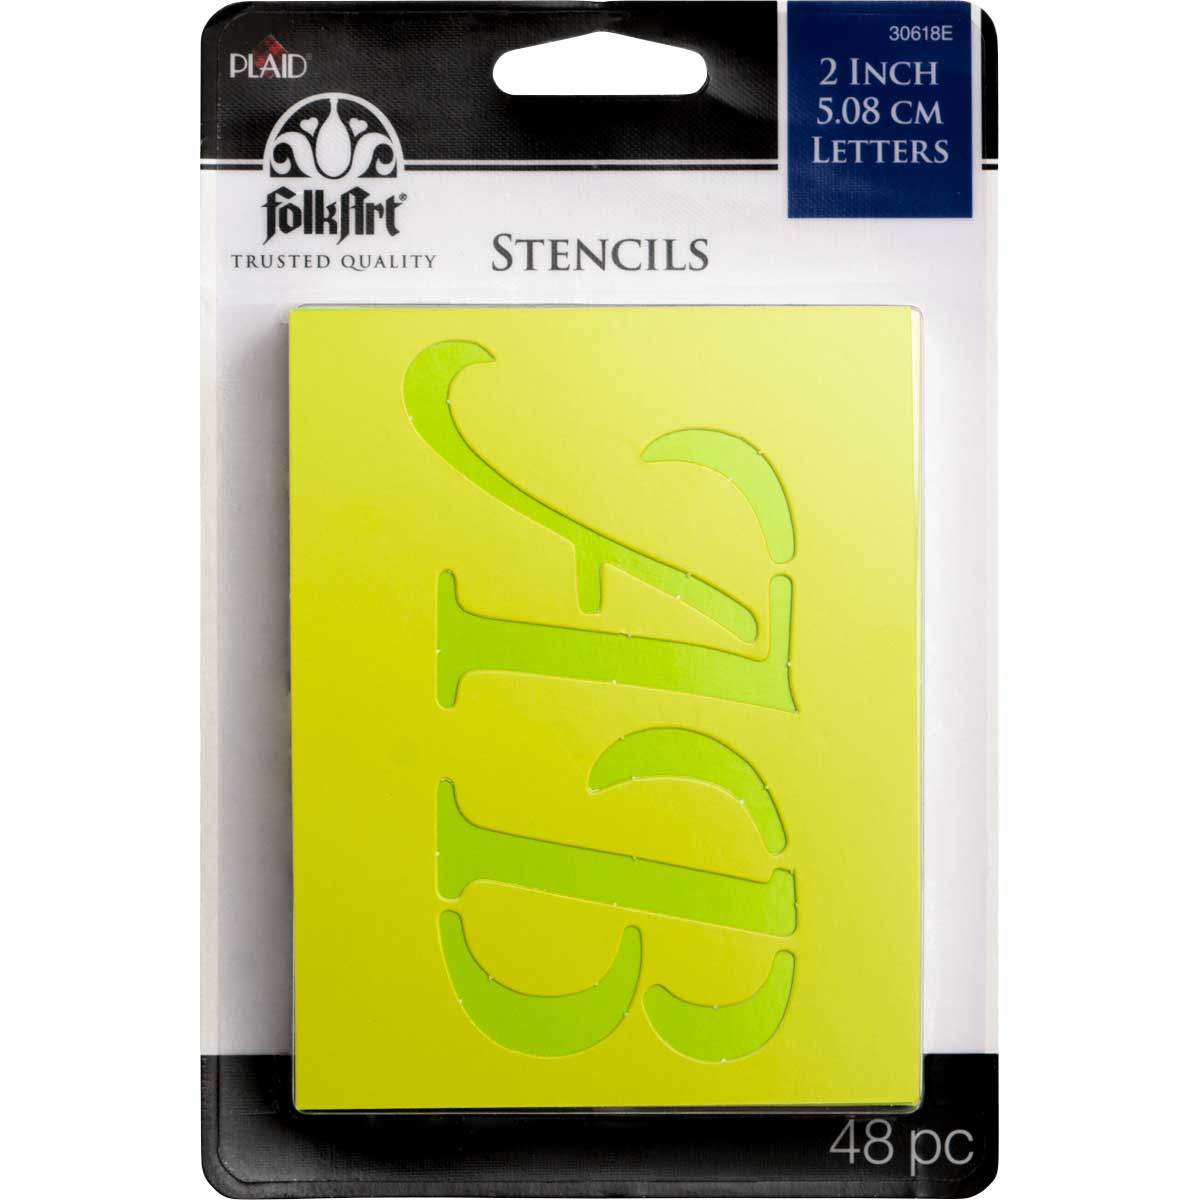 Plaid ® Stencils - Value Packs - Letter Stencils - 2